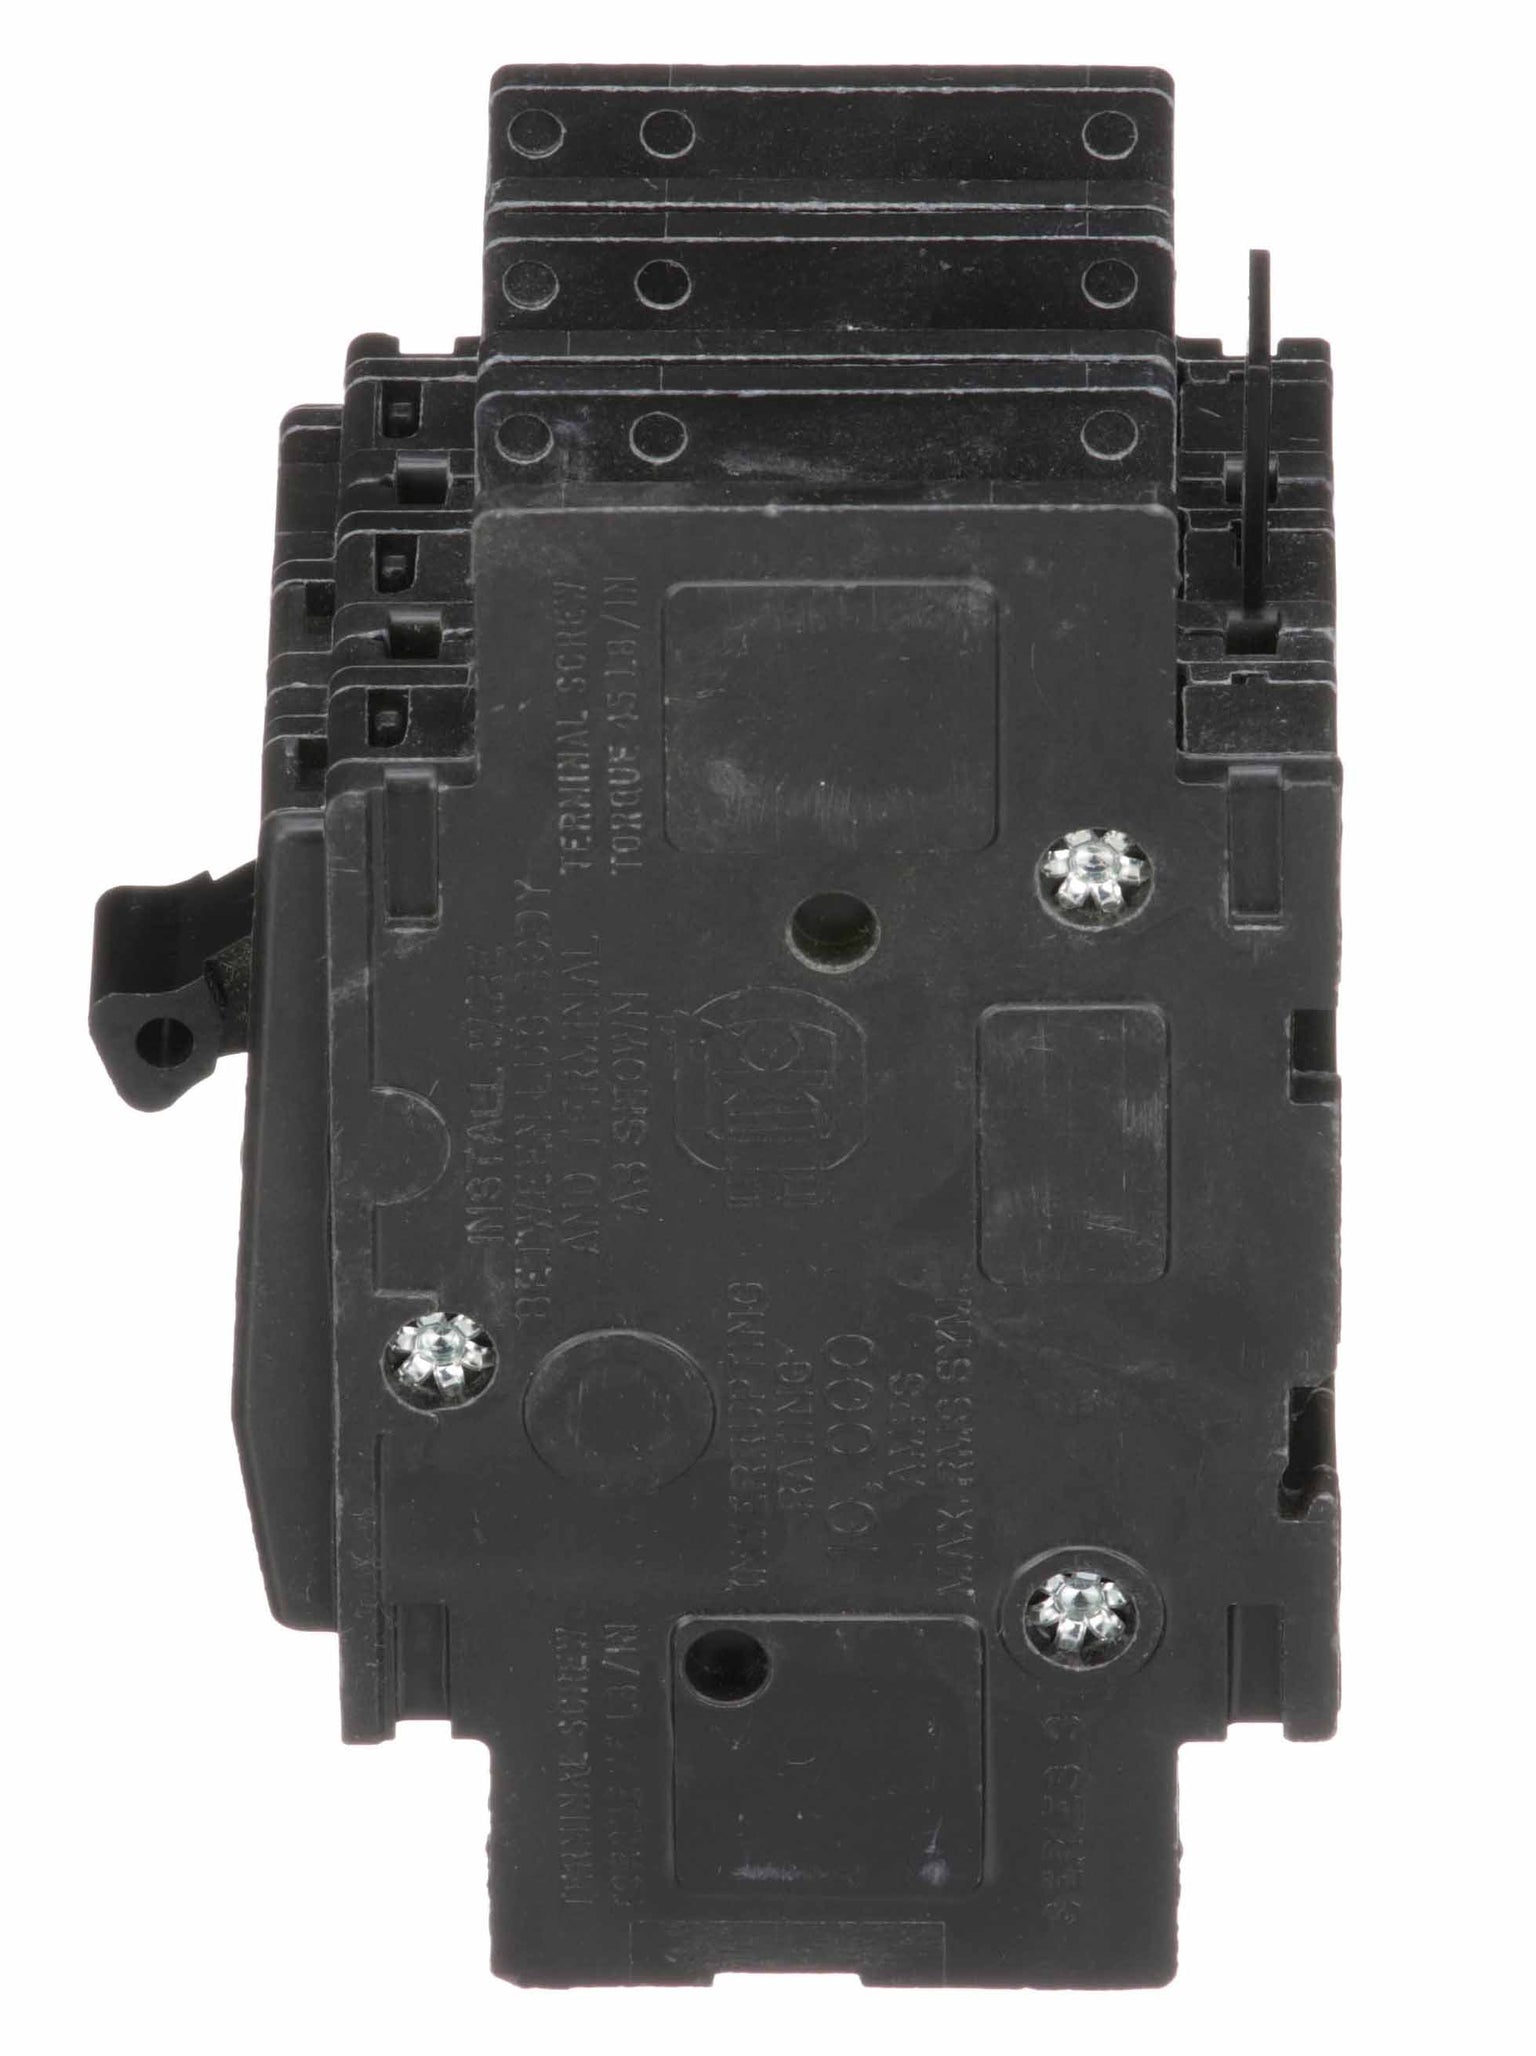 QOU320 - Square D - 20 Amp Circuit Breaker